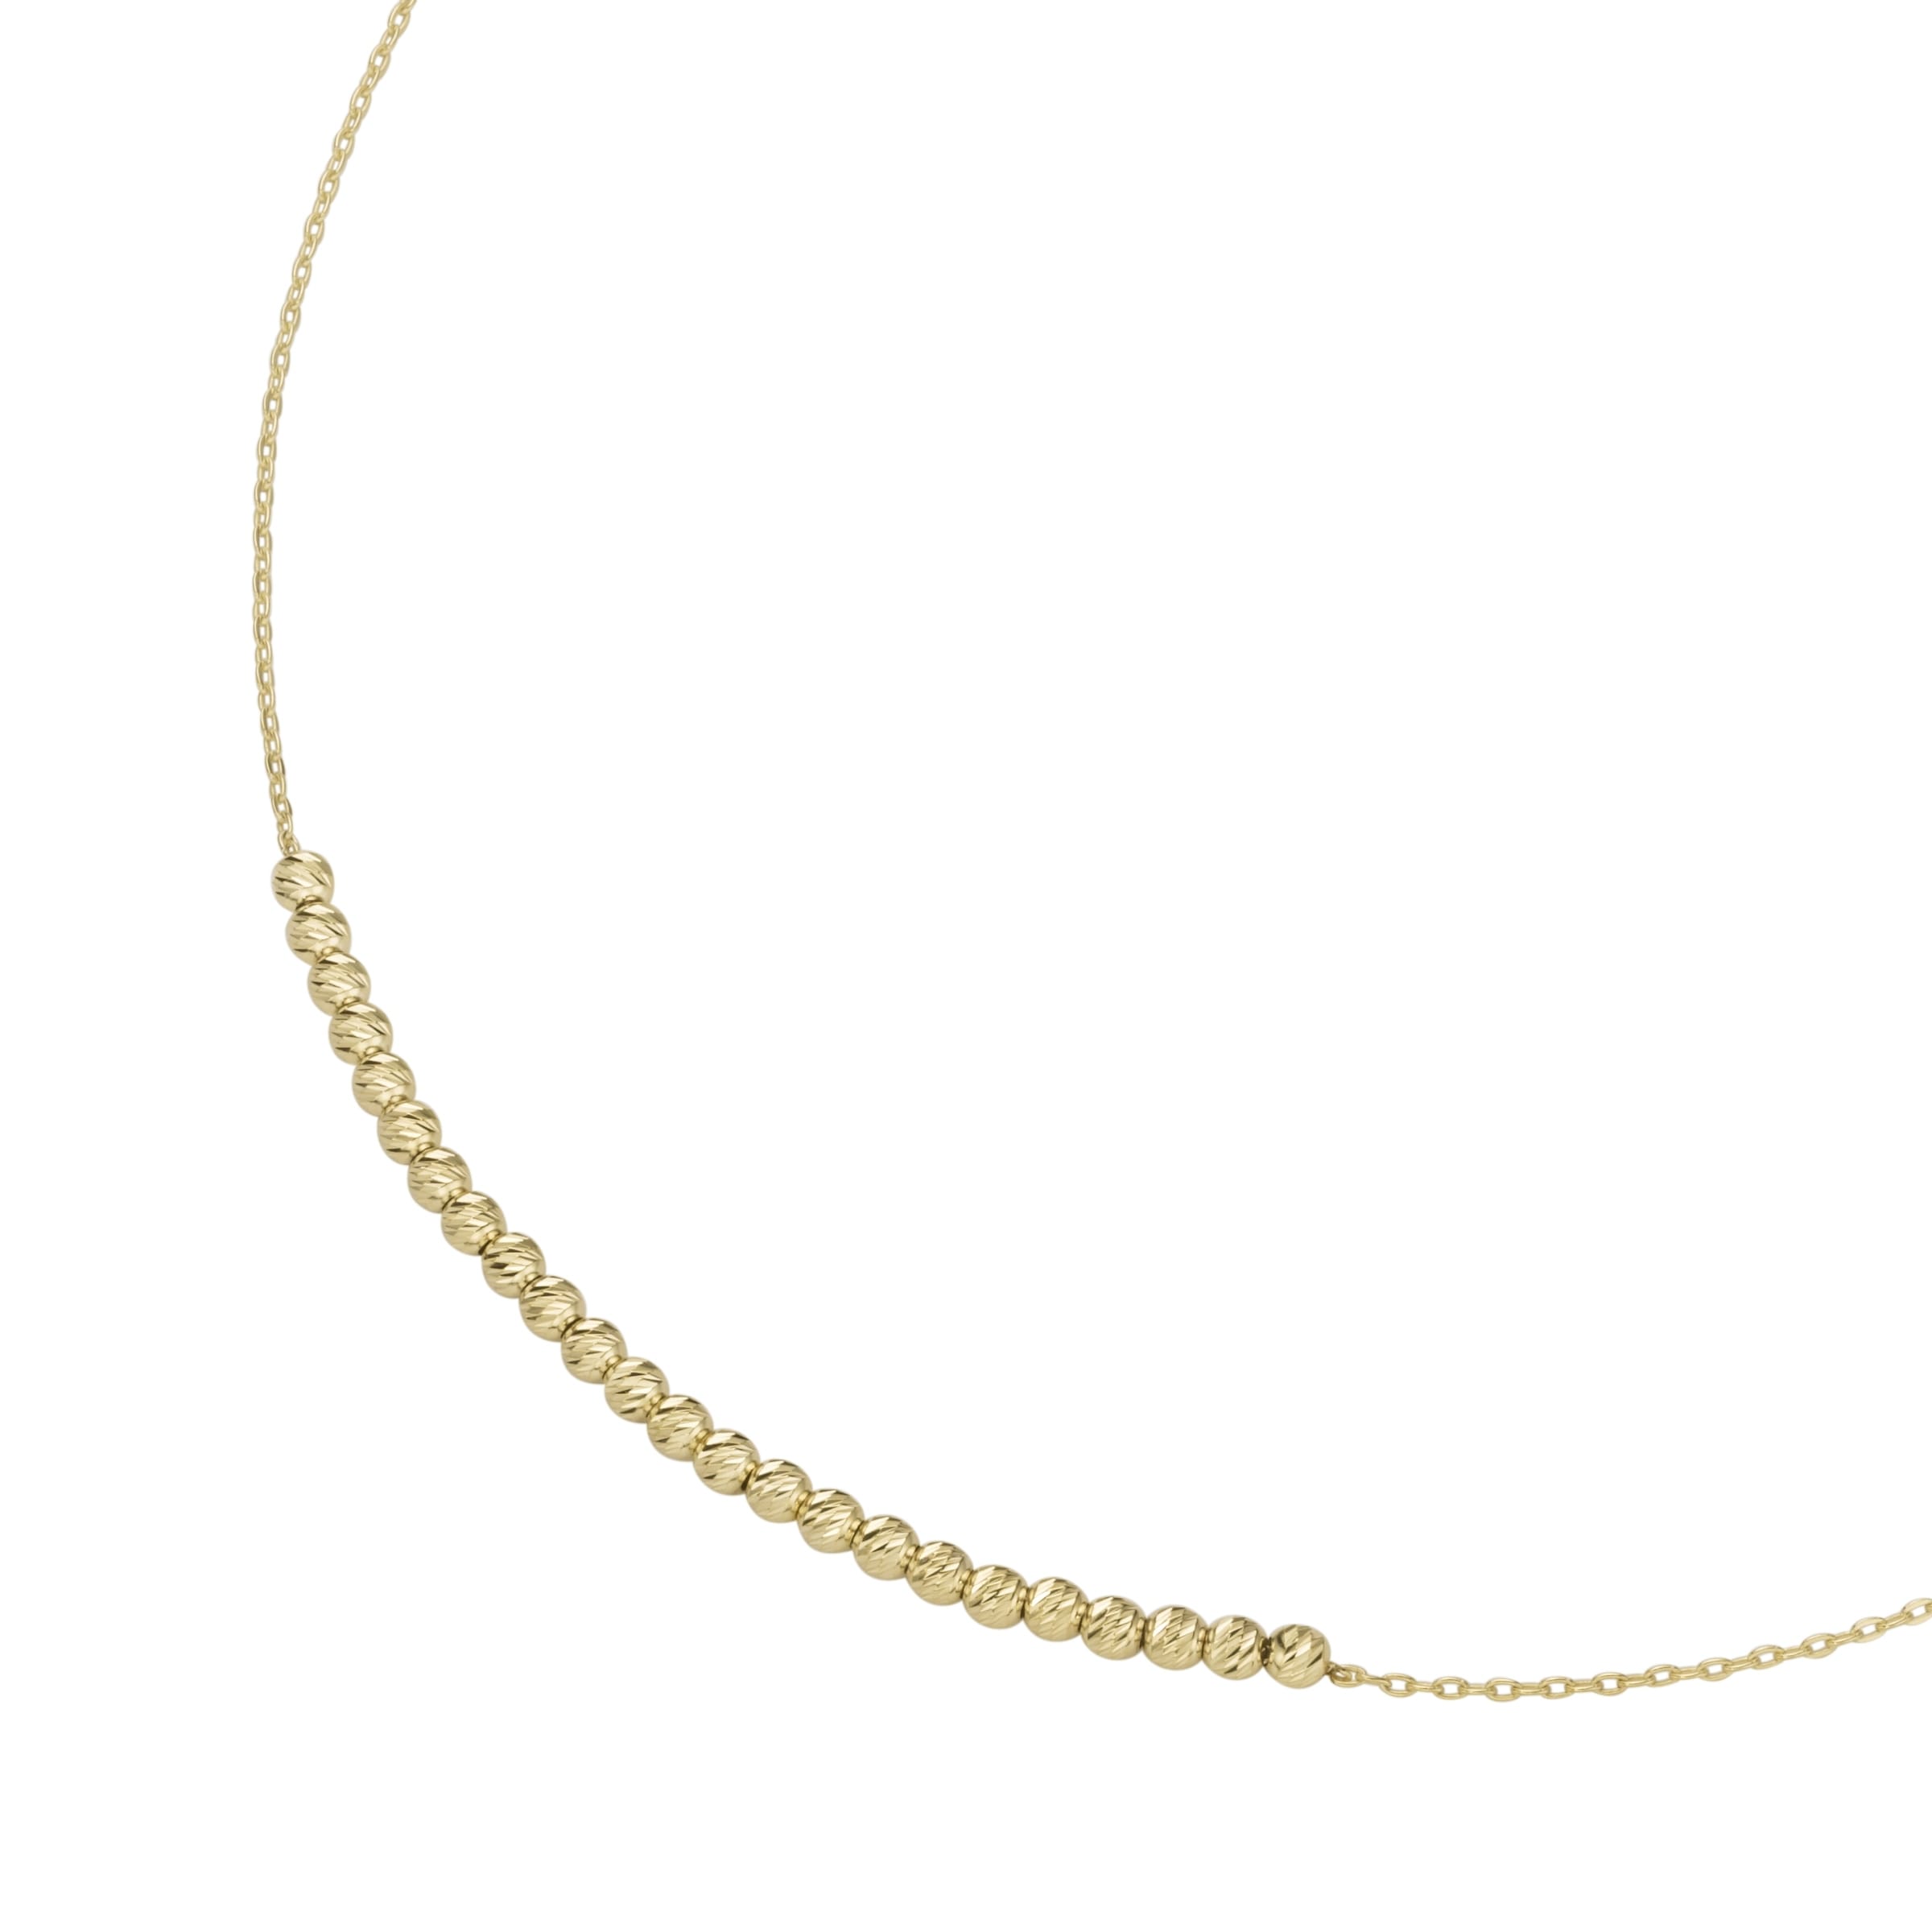 OTTO Luigi »Collier diamantierten Online Shop Merano Goldkette mit 375« im Gold Kügelchen,